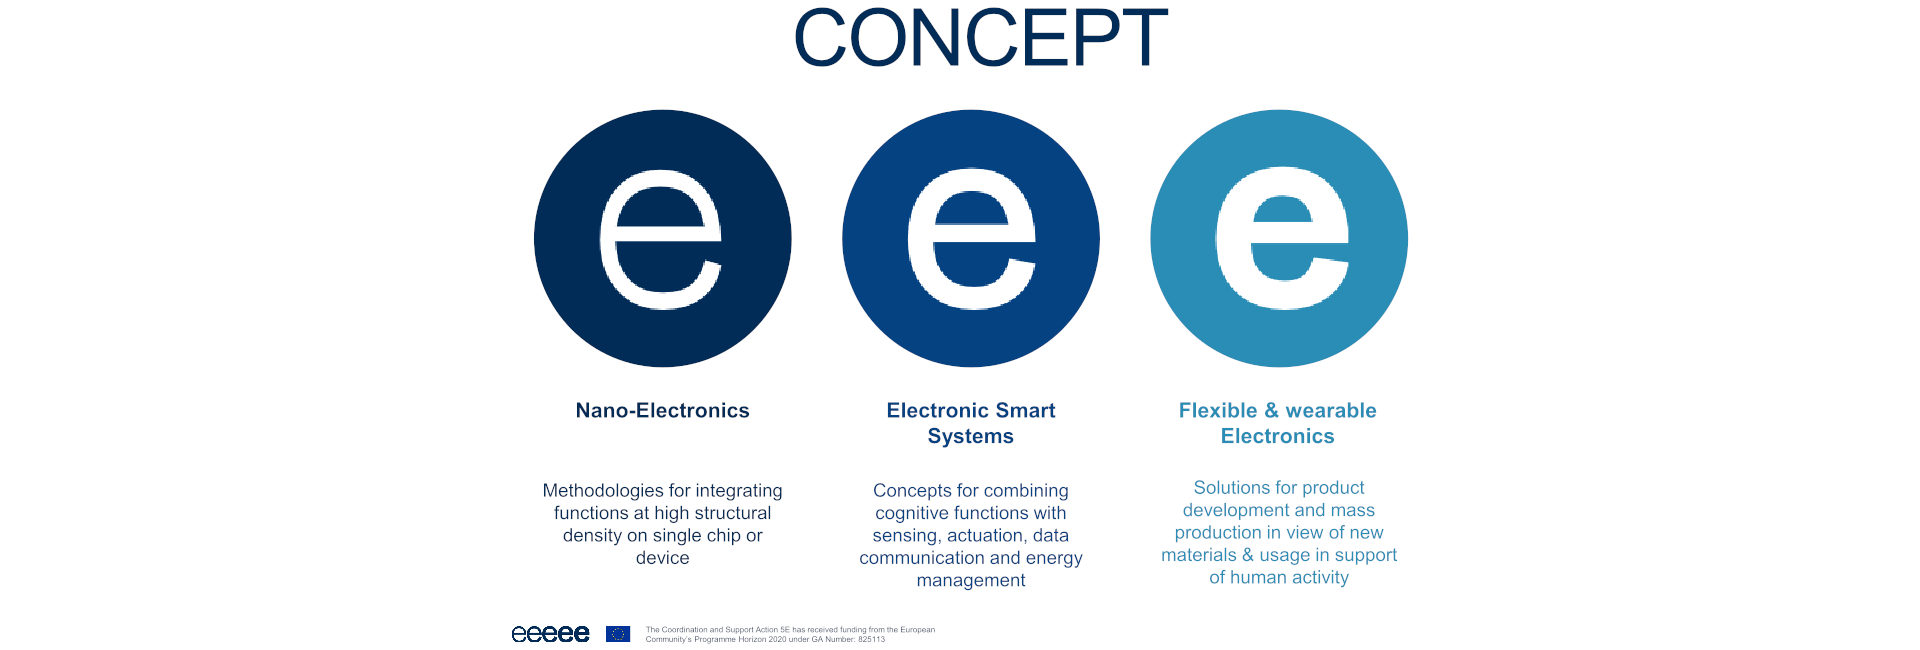 5E - Electronics and Europe